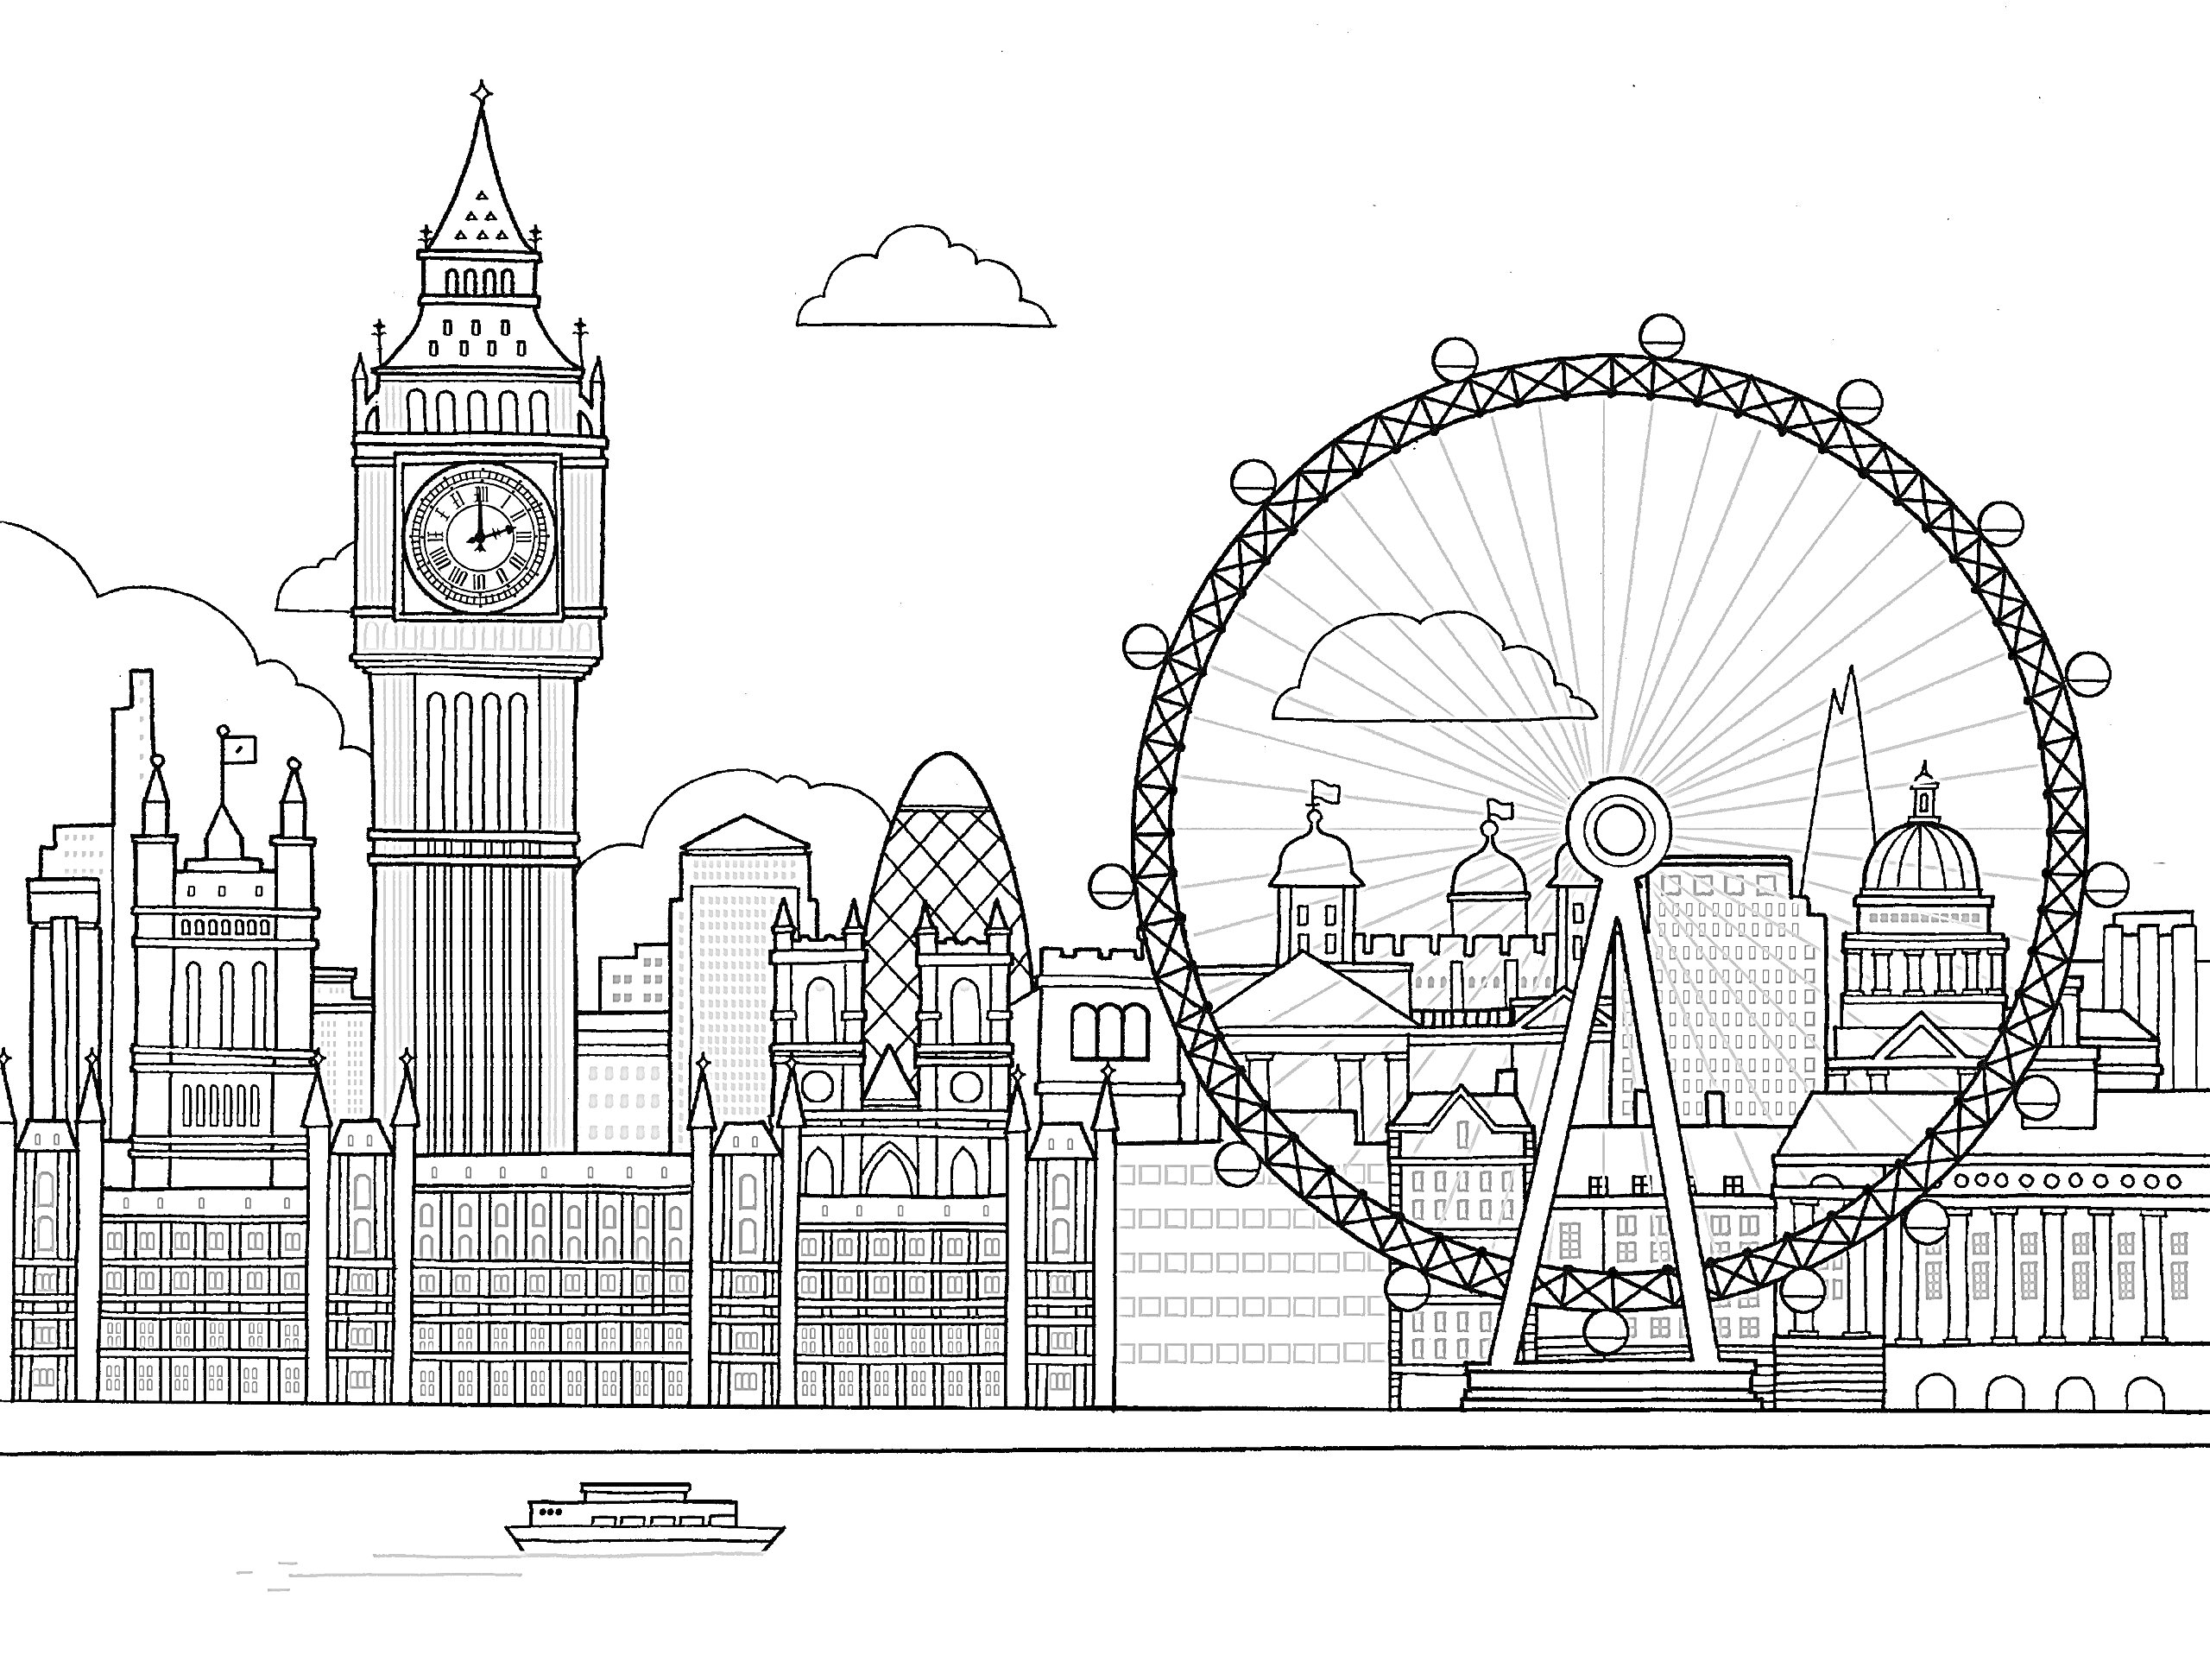 Раскраска Лондонский пейзаж со зданиями Вестминстерского дворца, часовой башней (Биг Бен), колёсом обозрения (Лондонский глаз), небоскрёбами, рекой Темзой и лодкой